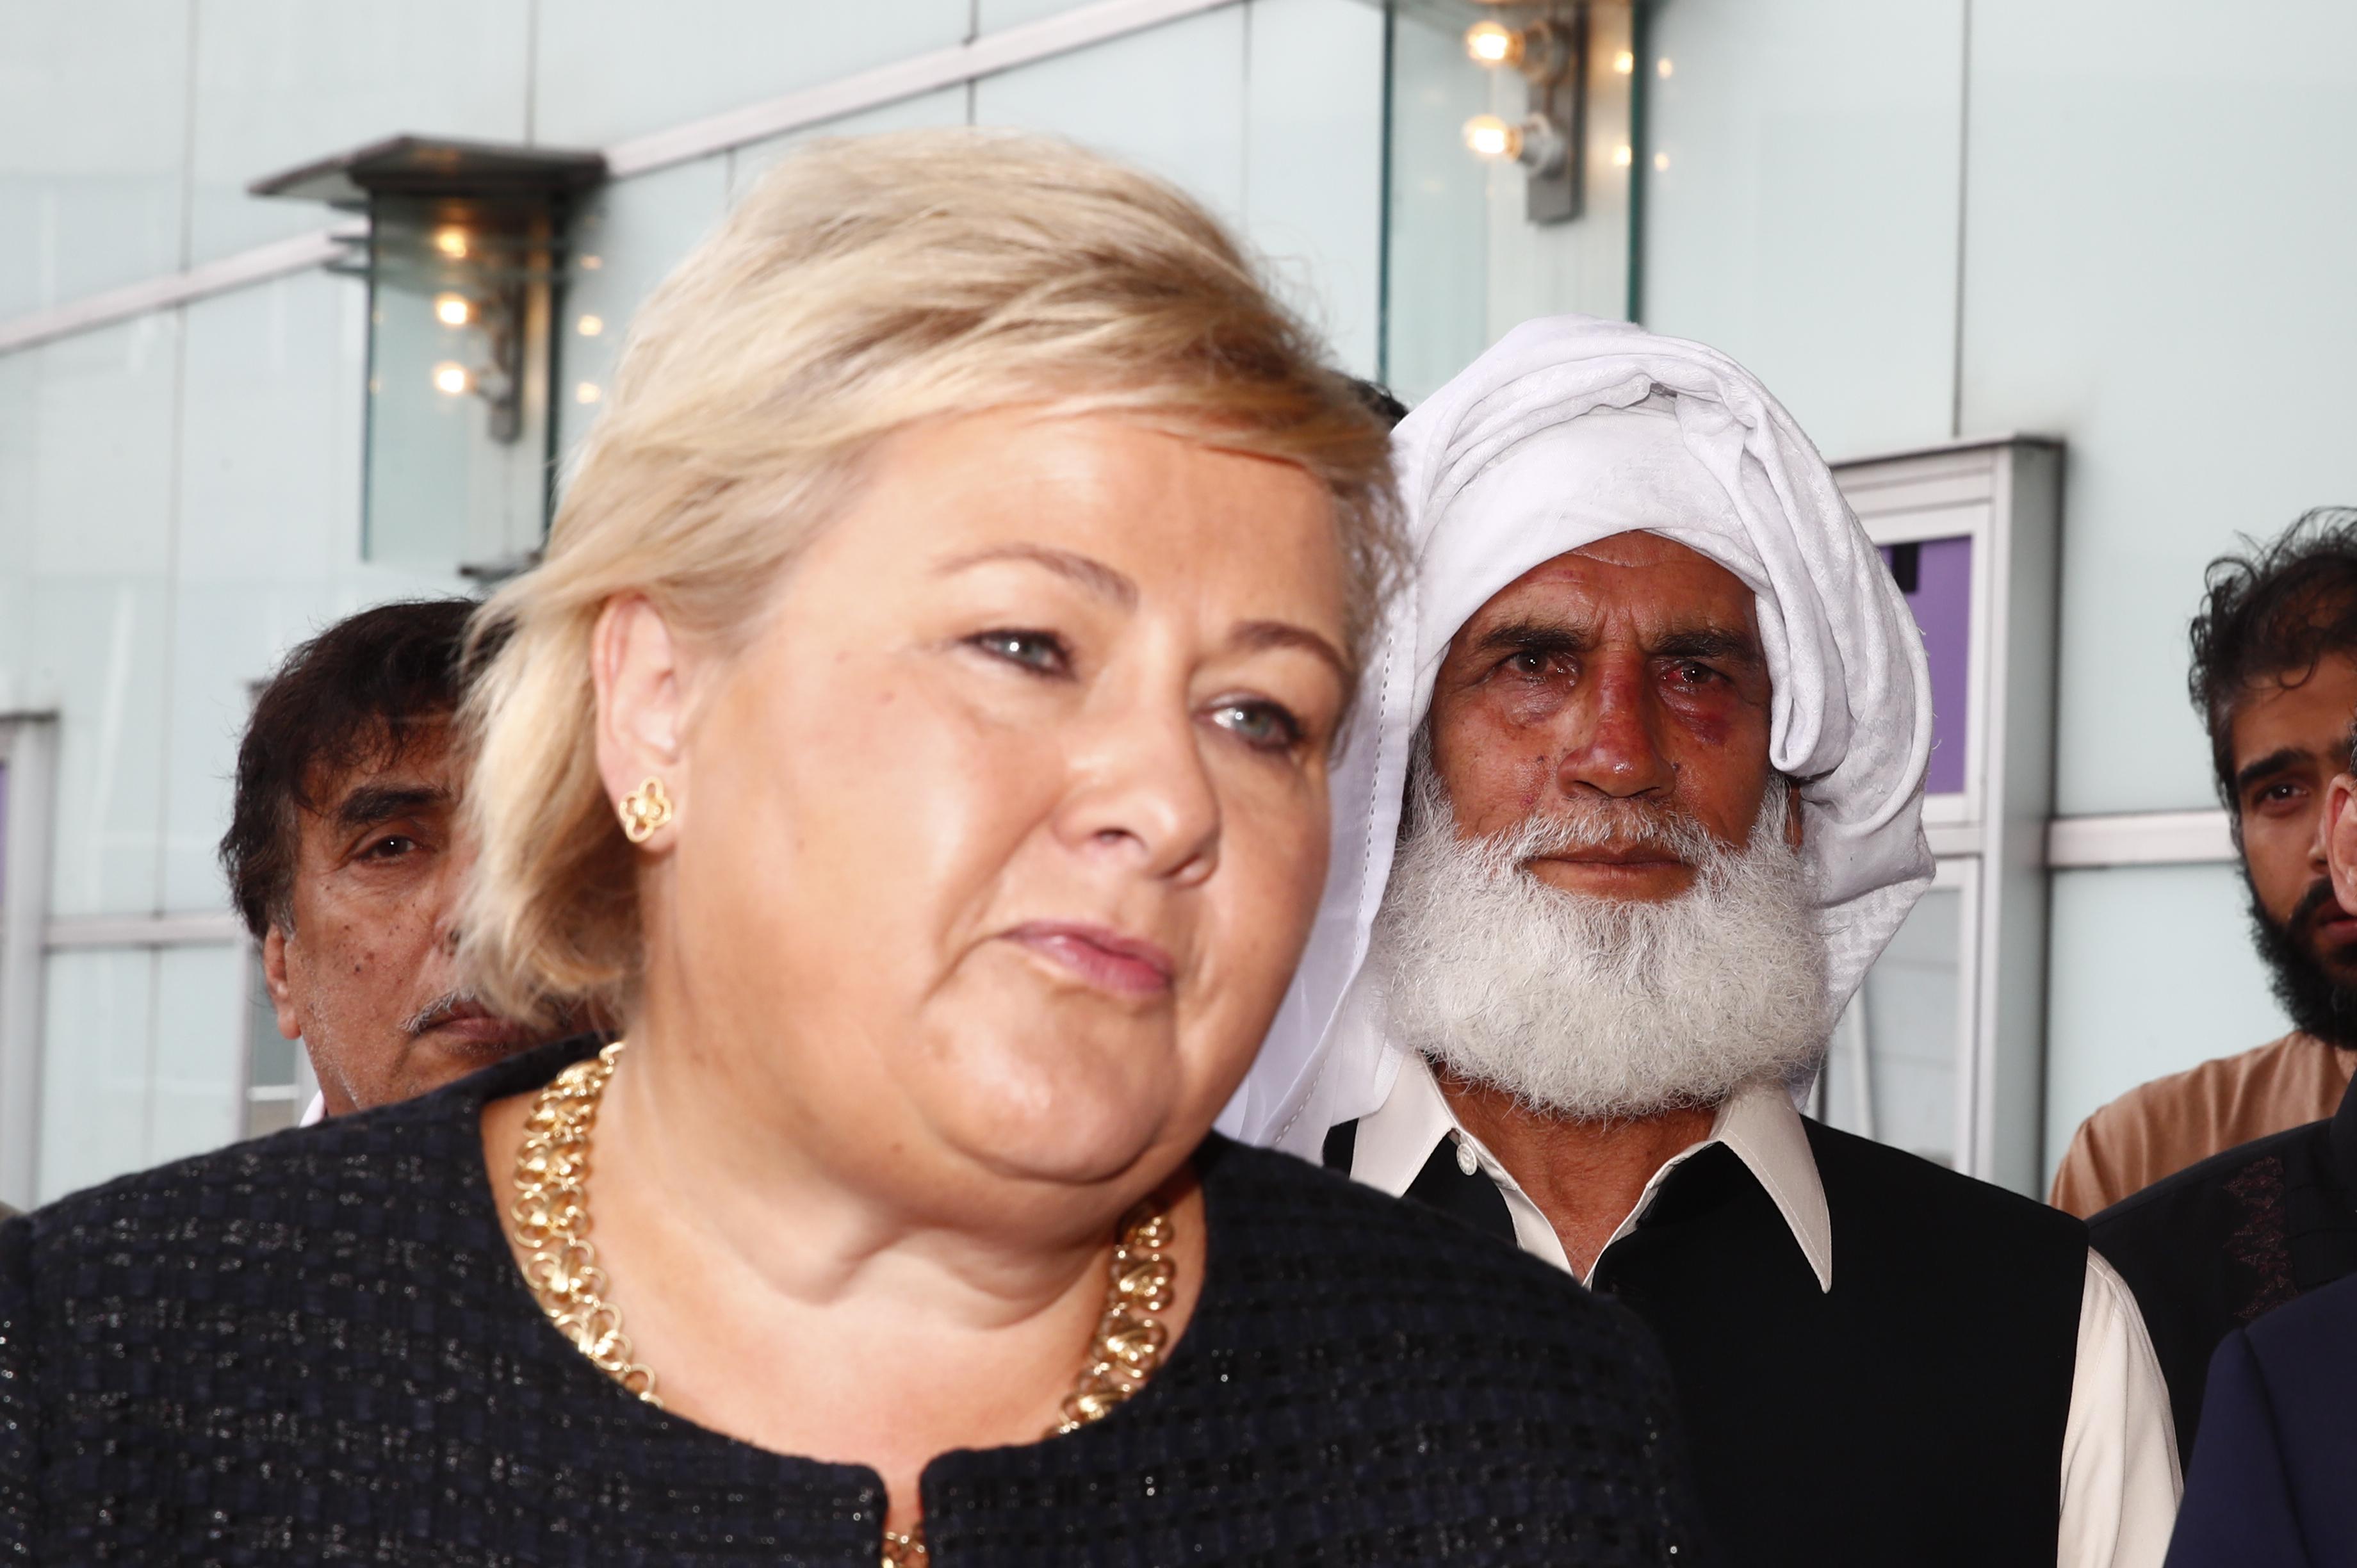 Statsminister Erna Solberg om moskéterroren: – Vi er ikke stolte